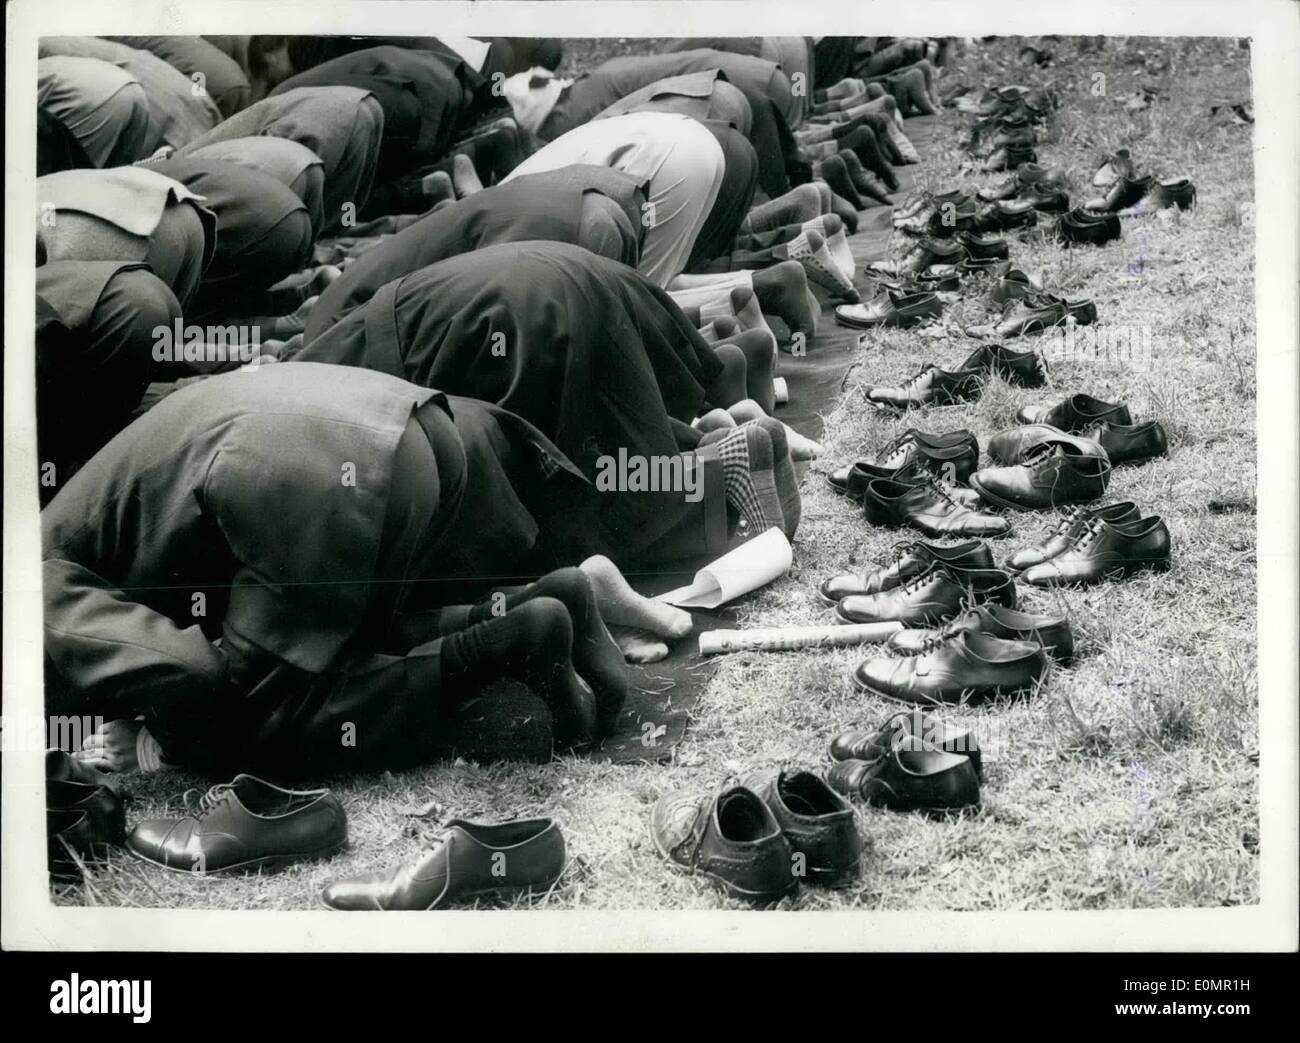 5. Mai 1956 - Eid-Up-Fitr Muslm Festival in London Moschee: die traditionellen muslimischen Festival Eid-Ul-Fitr fand heute Morgen in London Mosque, Southfields. das Foto zeigt einige der frommen - mit ihren Schuhen hinter ihnen - als sie - auf dem Festival heute Morgen beten gesehen. Stockfoto